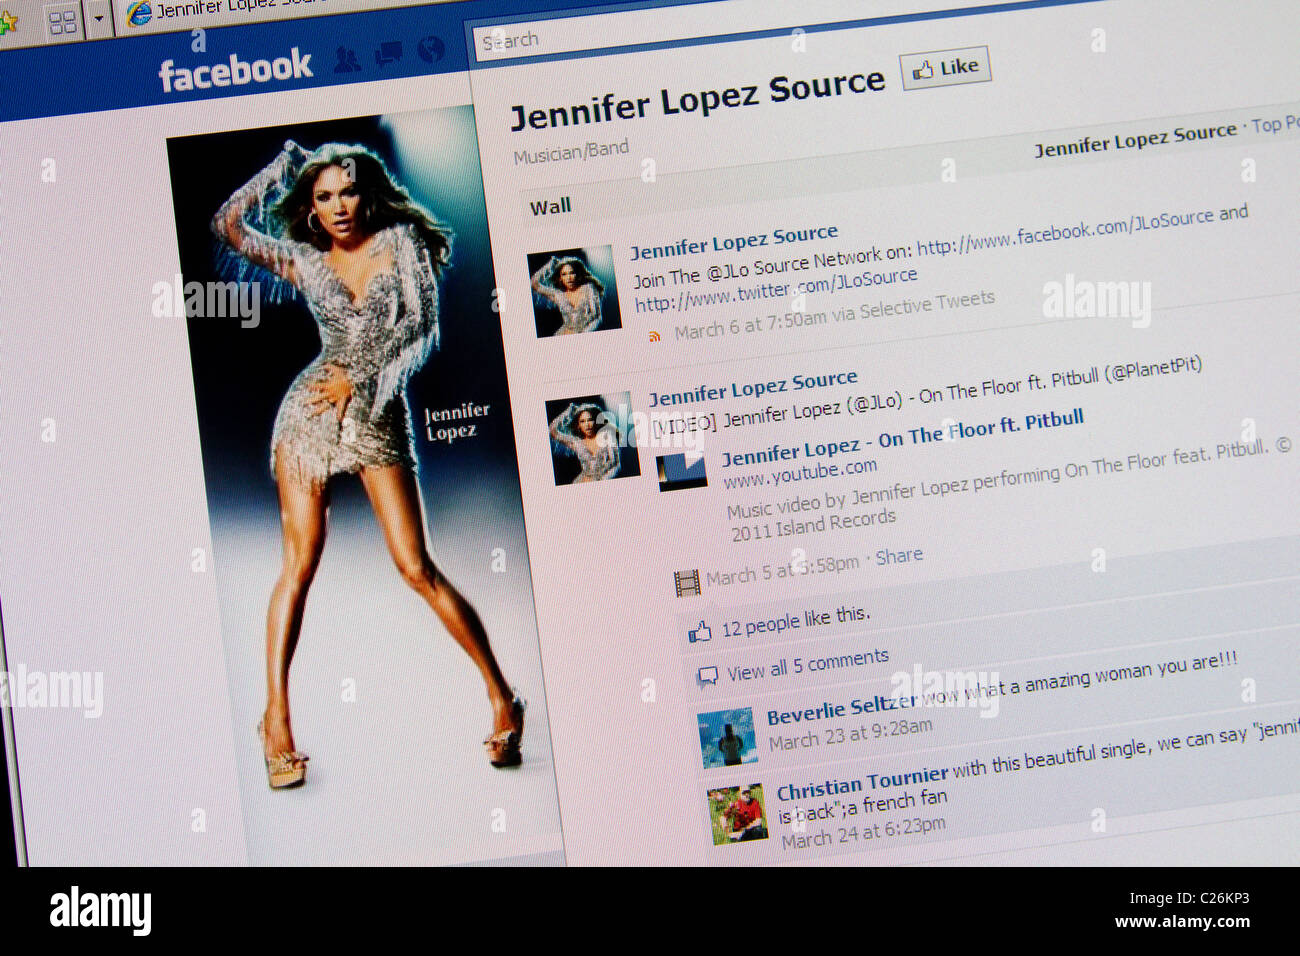 Jennifer Lopez Jlo facebook fanpage Stock Photo - Alamy